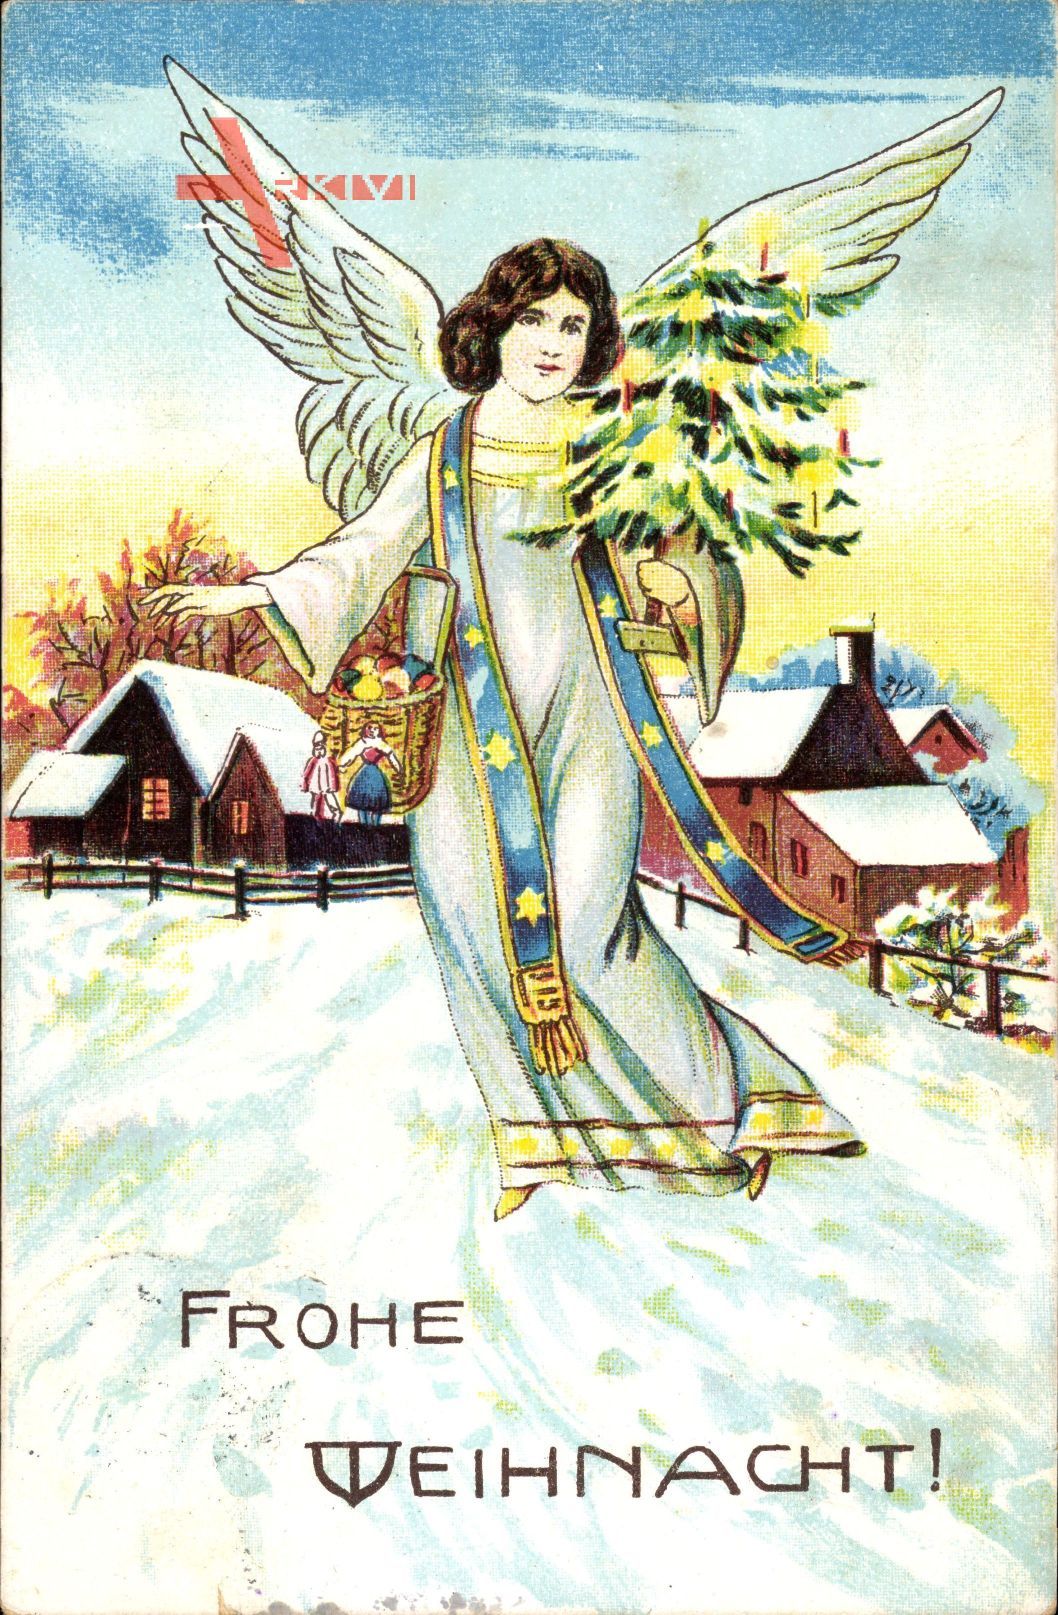 Glückwunsch Weihnachten, Engel mit Weihnachtsbaum, Schnee, Häuser